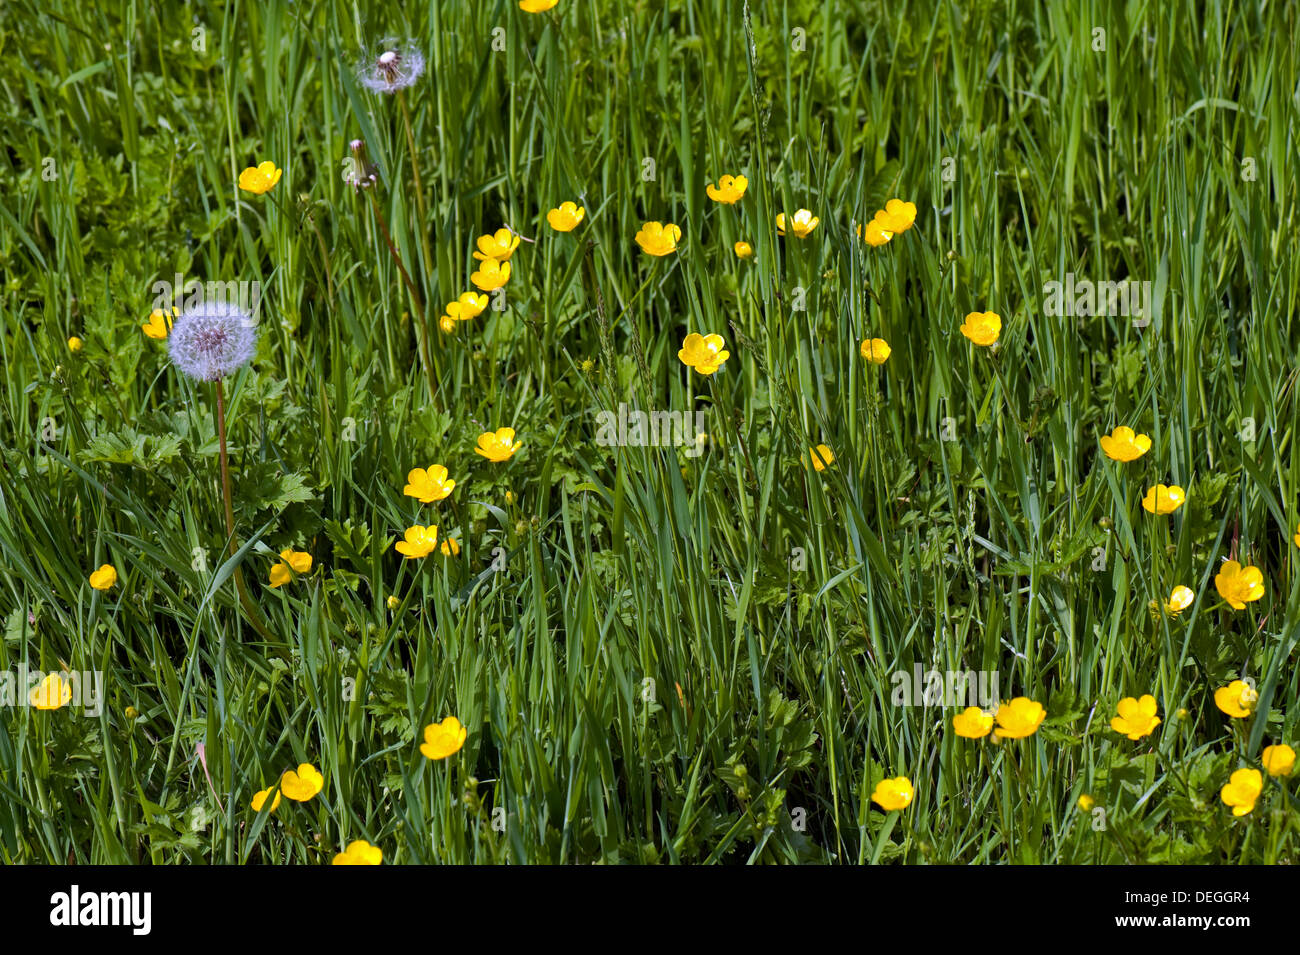 Kriechende Hahnenfuß, Ranunculus Repens, Blüte in einer Land-Wiese mit Löwenzahn Samenköpfe Stockfoto